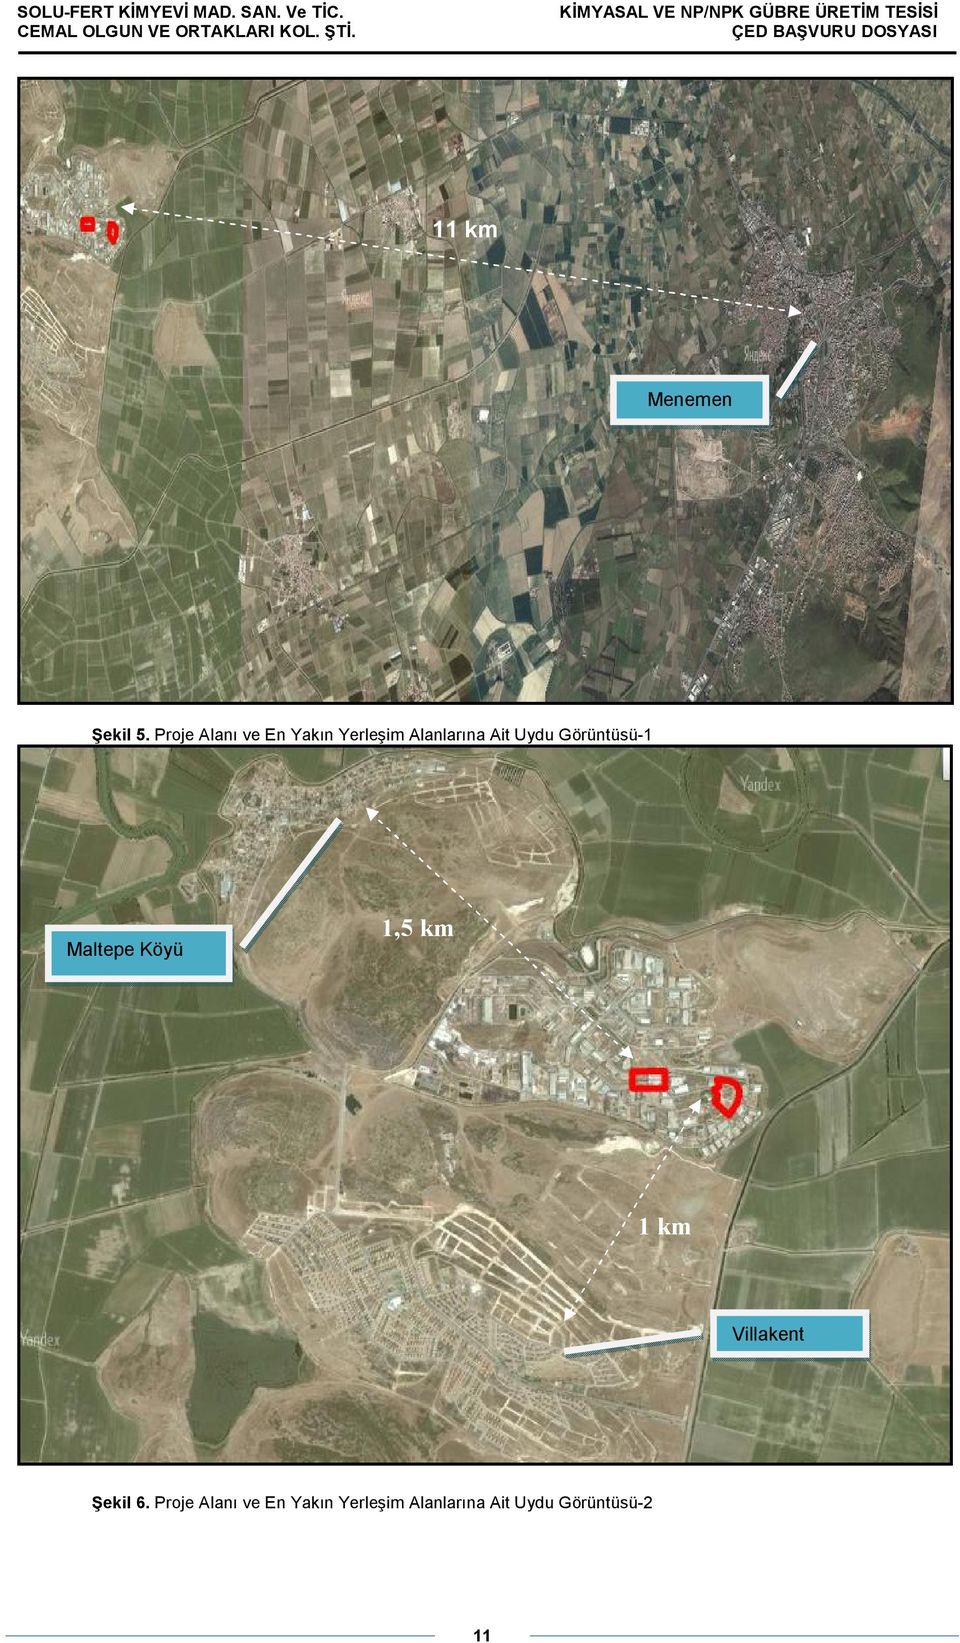 Uydu Görüntüsü-1 Maltepe Köyü 1,5 km 1 km